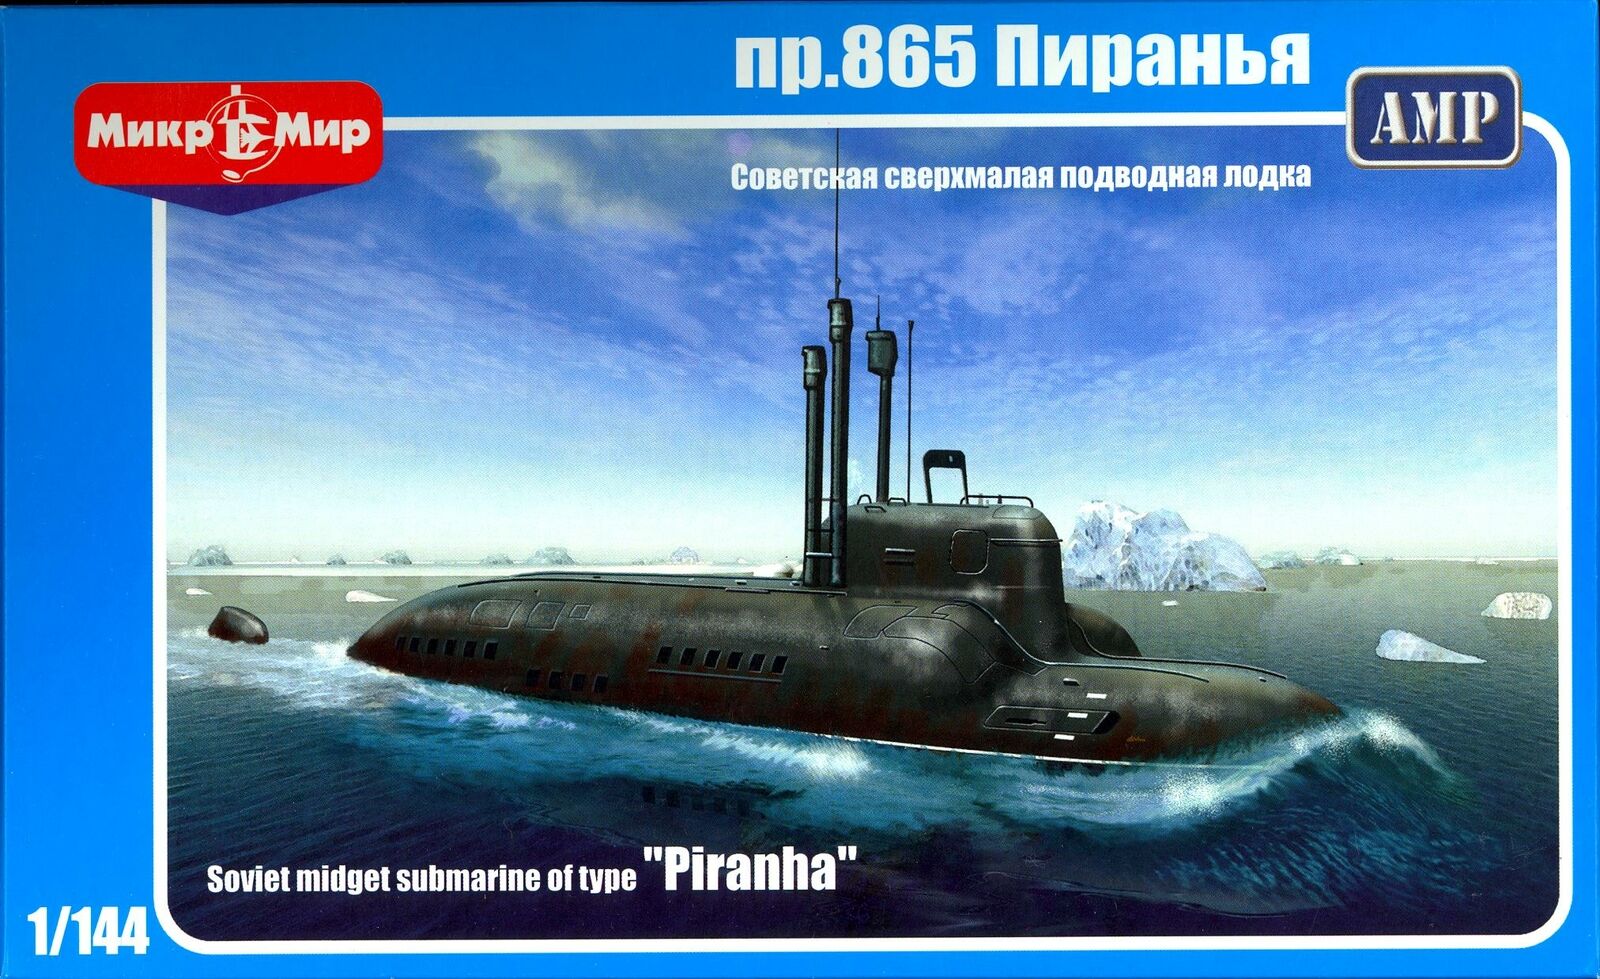 144-001  флот  Подводная лодка проект.865 "Пиранья"  (1:144)